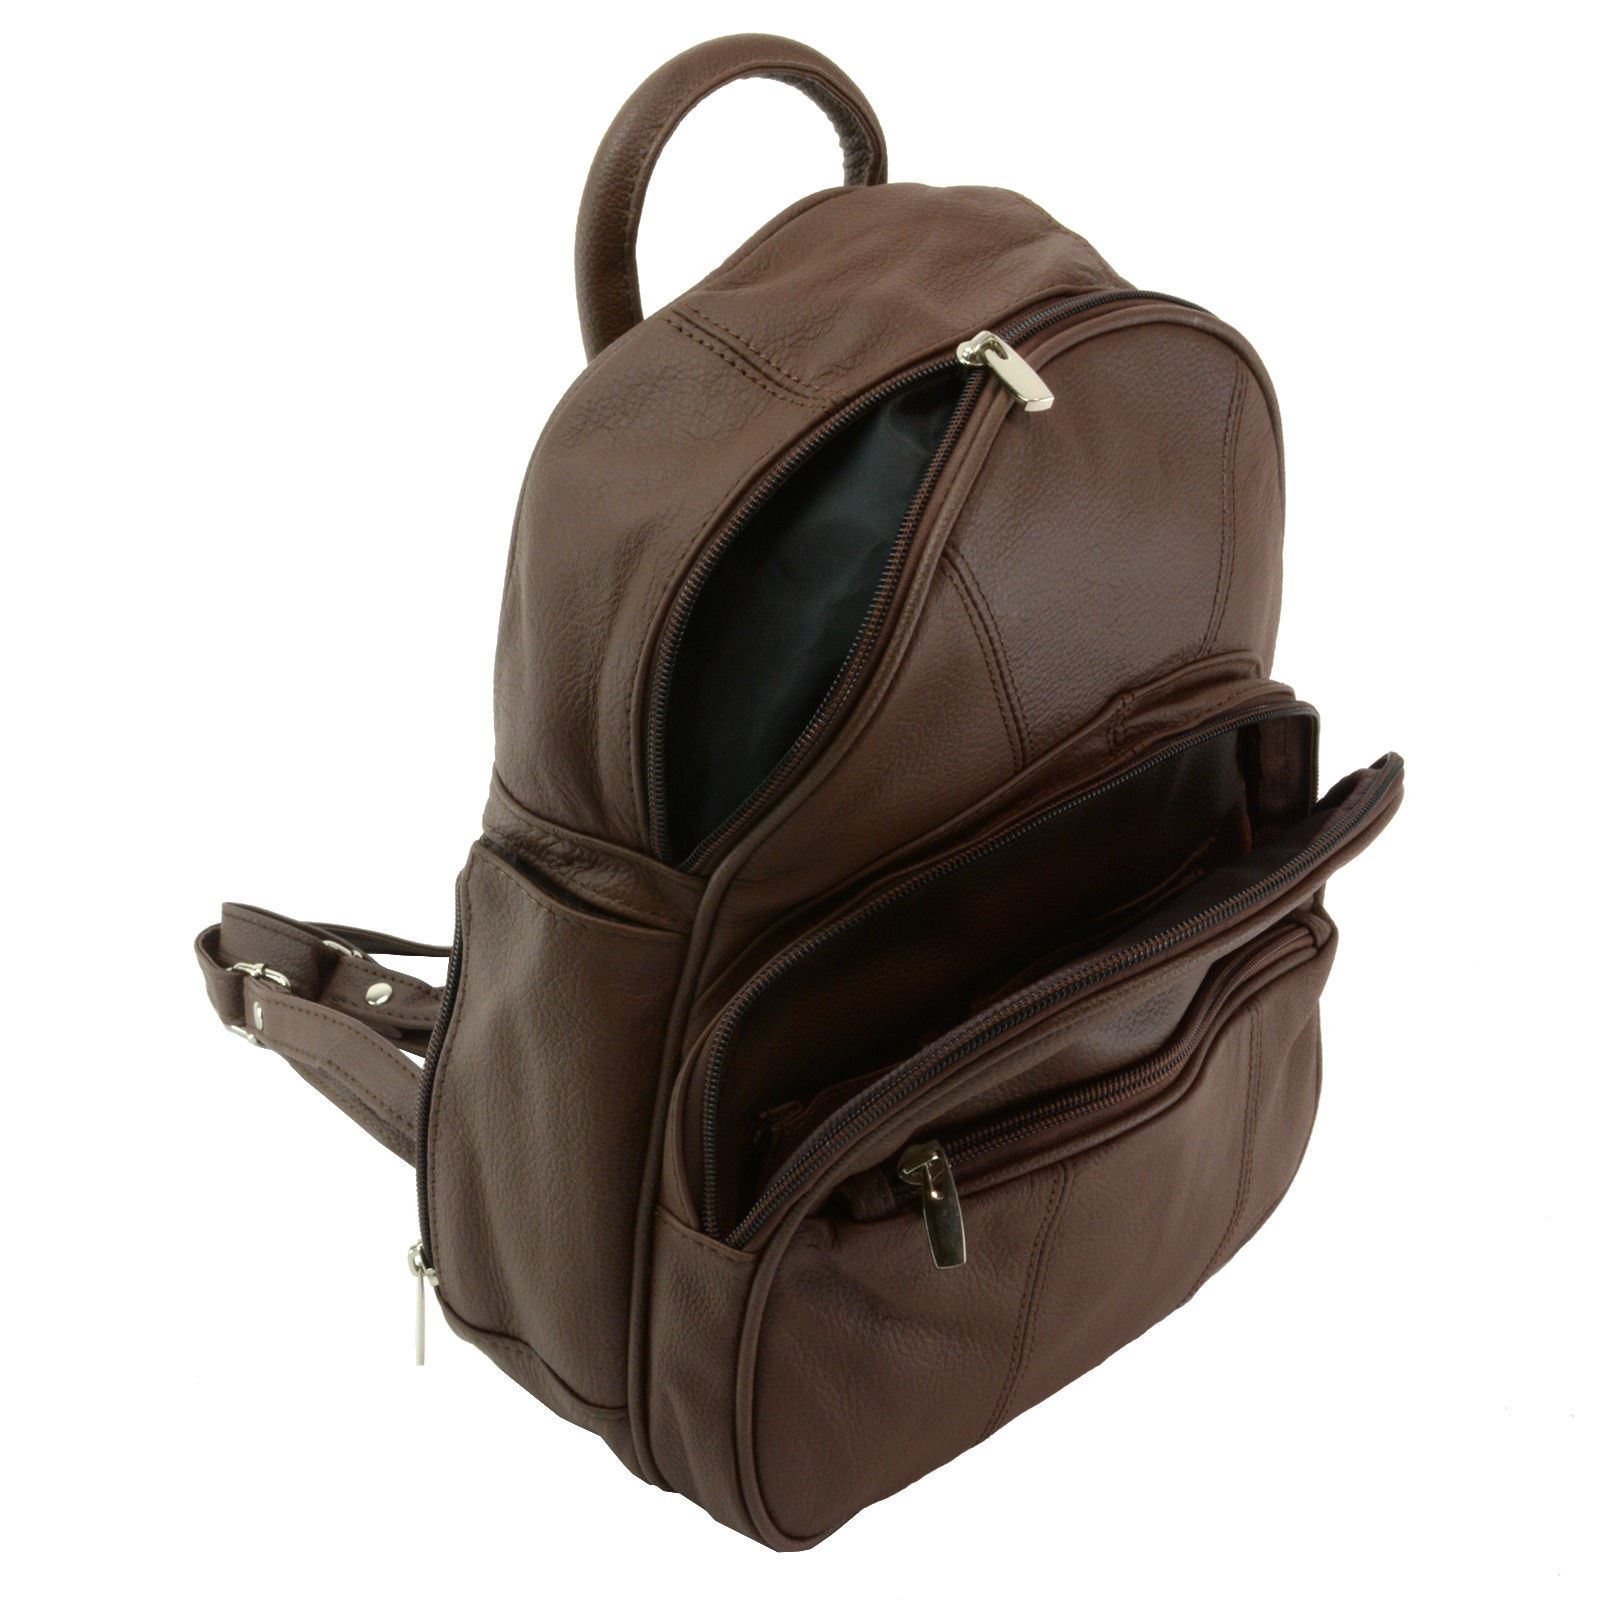 New Leather Backpack Purse Sling Bag Back Pack Shoulder Handbag ...